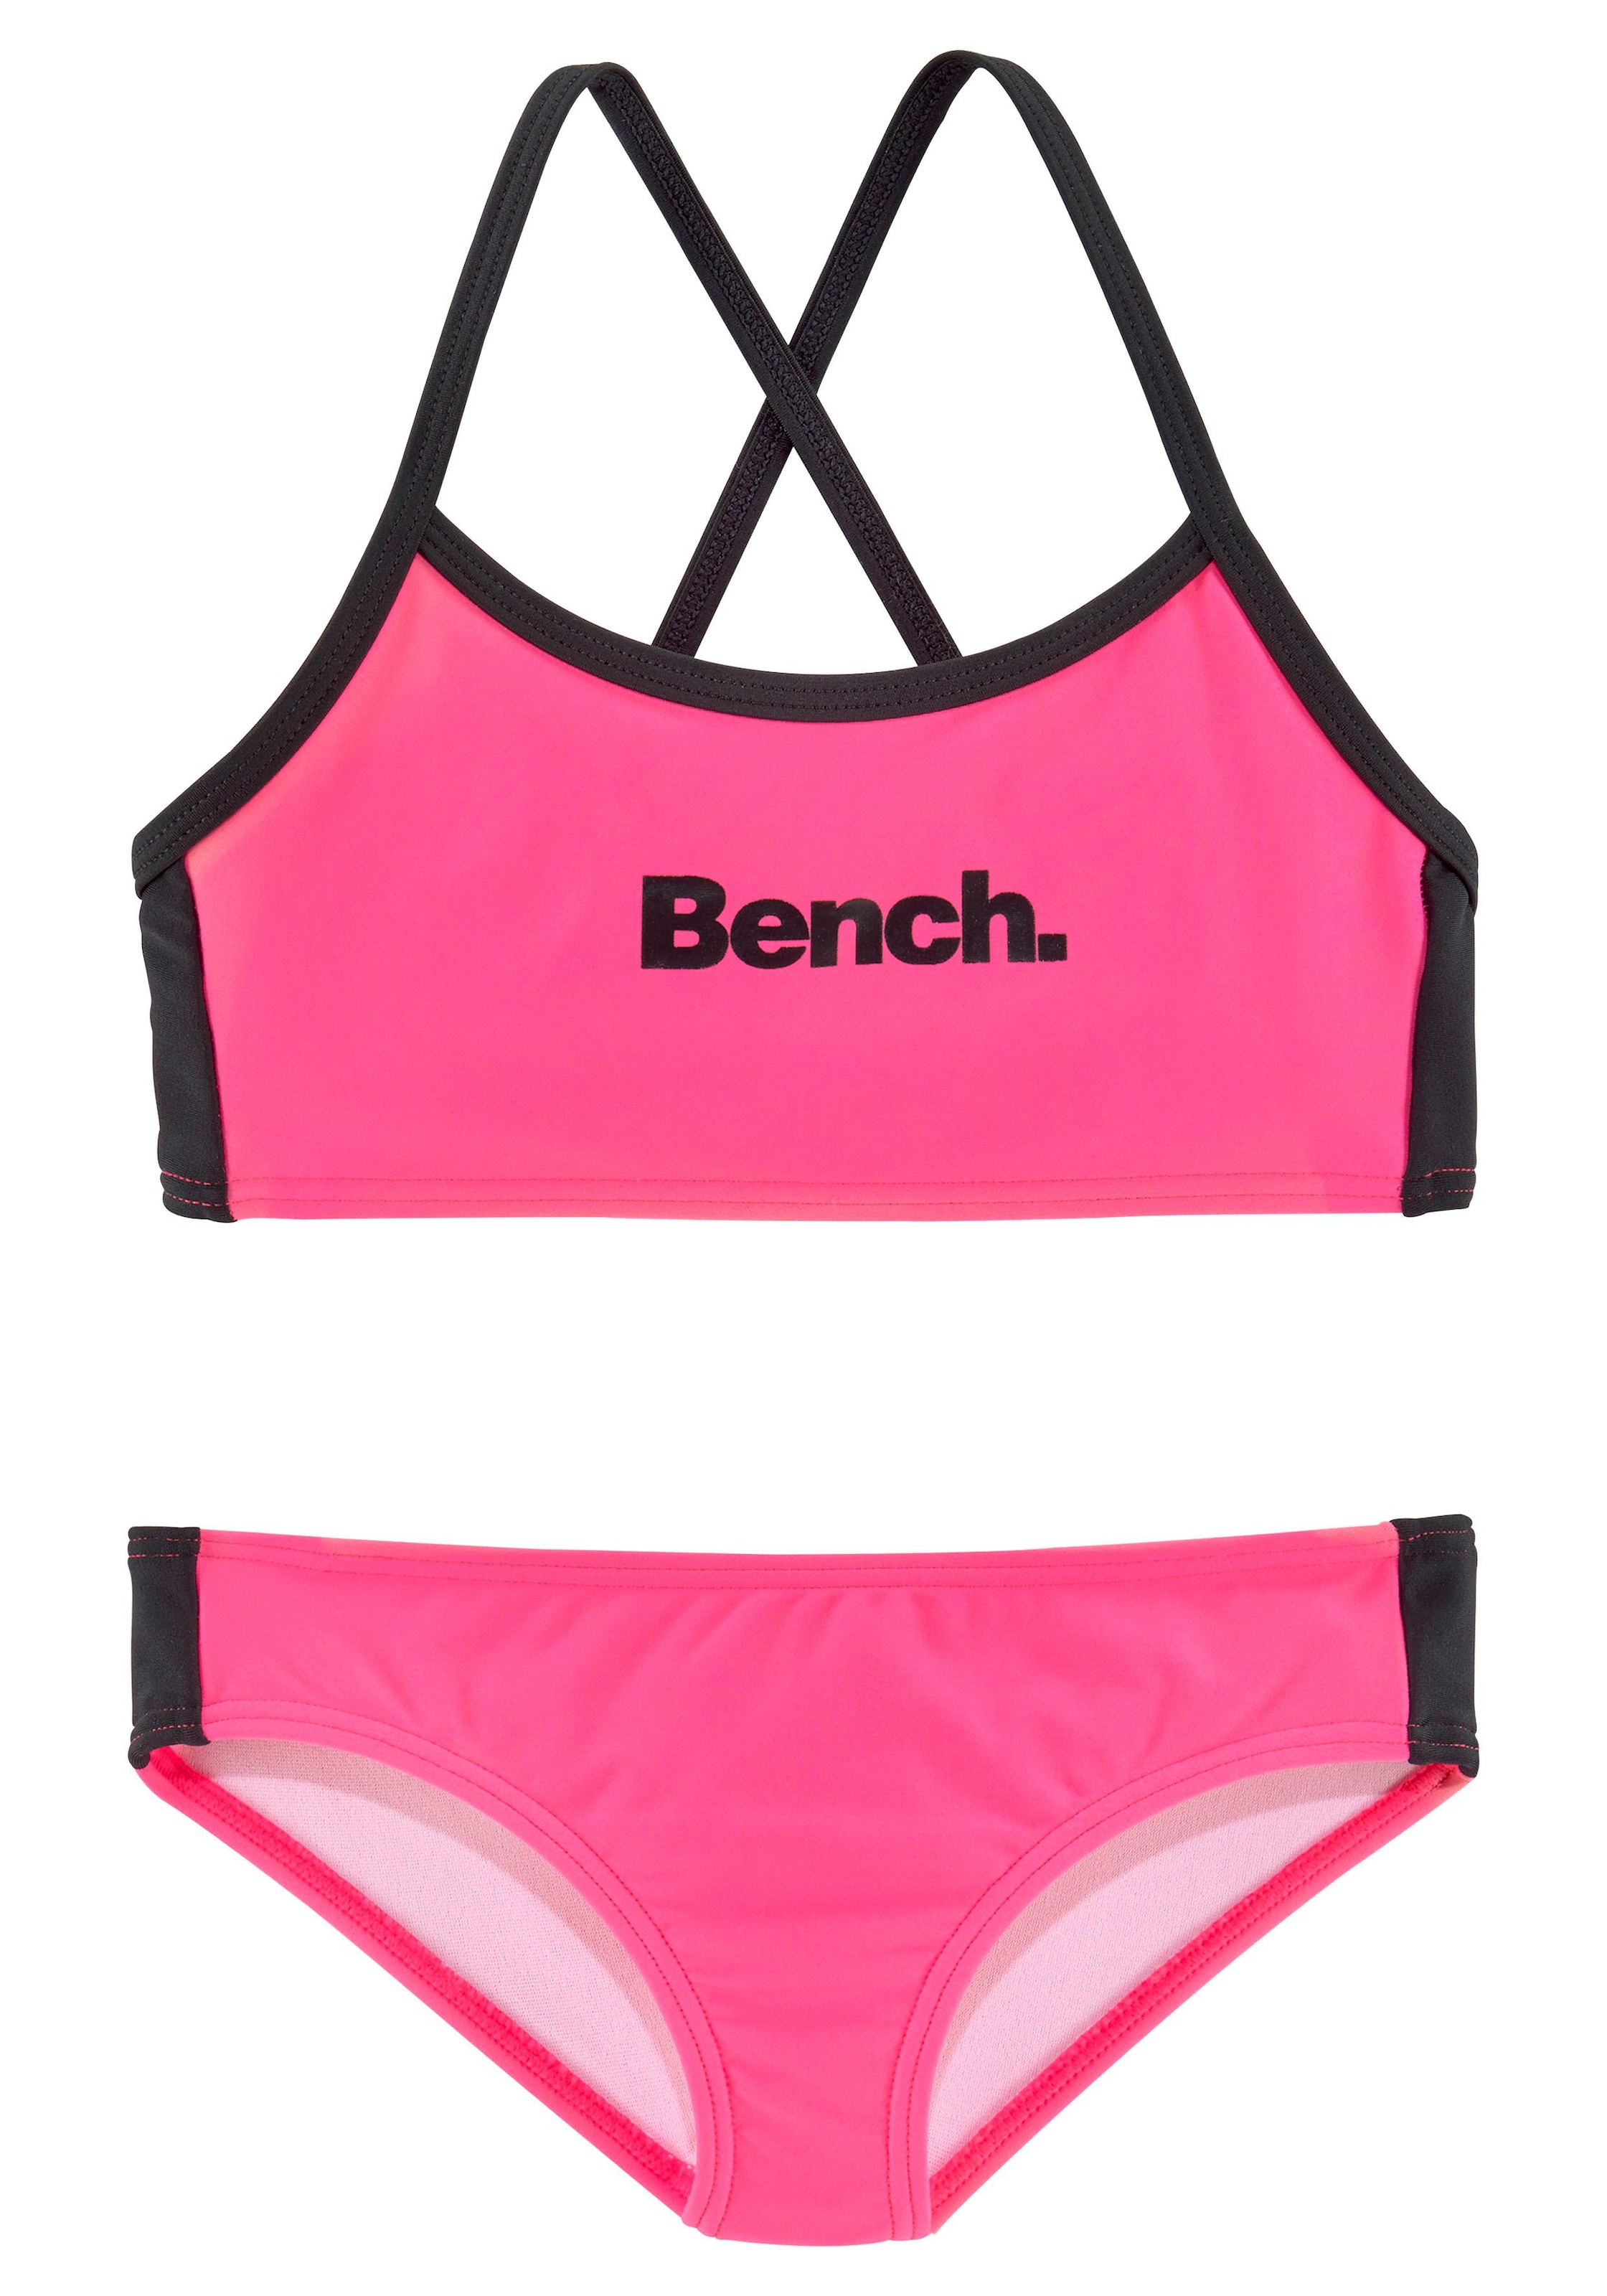 Bench. Bustier-Bikini mit regulierbaren Trägern online kaufen | BAUR